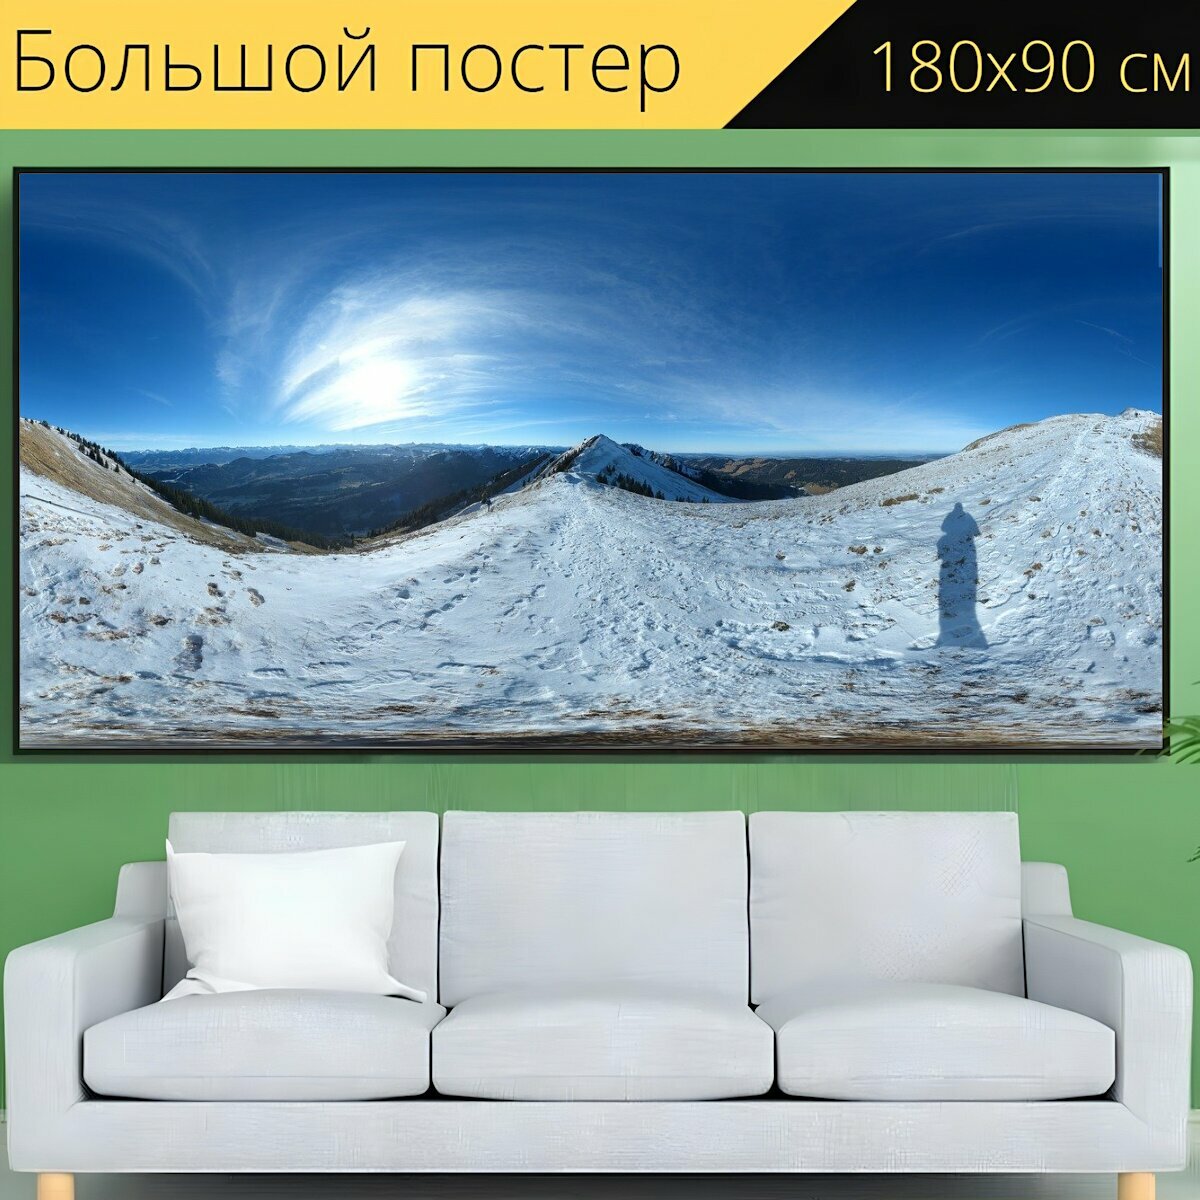 Большой постер "Зима, панорама, горы" 180 x 90 см. для интерьера